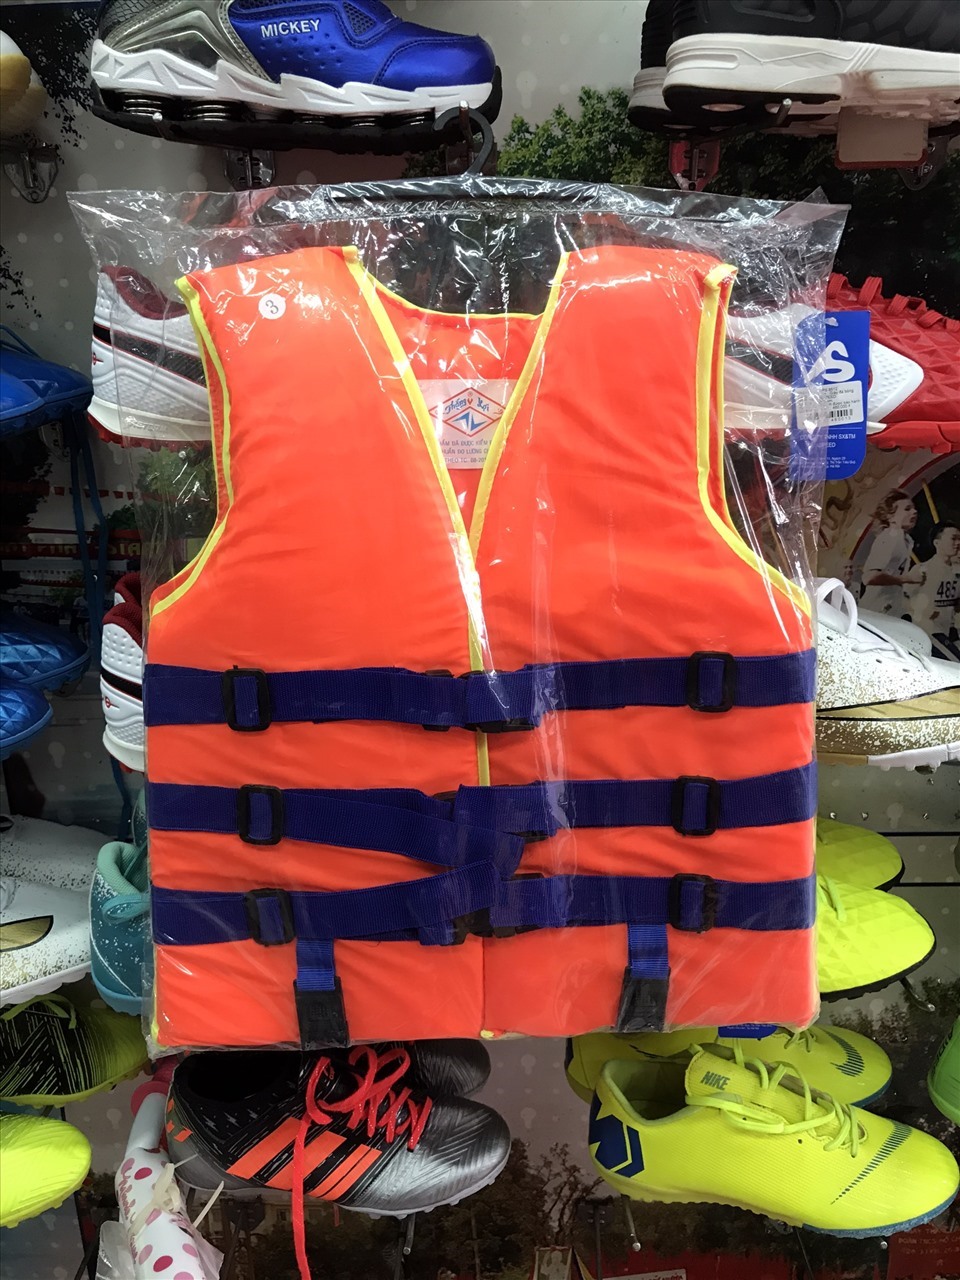 Hiện tại tất cả các cửa hàng trên phố Trịnh Hoài Đức đều cháy hàng áo phao cứu sinh cỡ lớn, nếu có thì giá bán tăng gấp đôi. Ảnh: Trang Mạc.